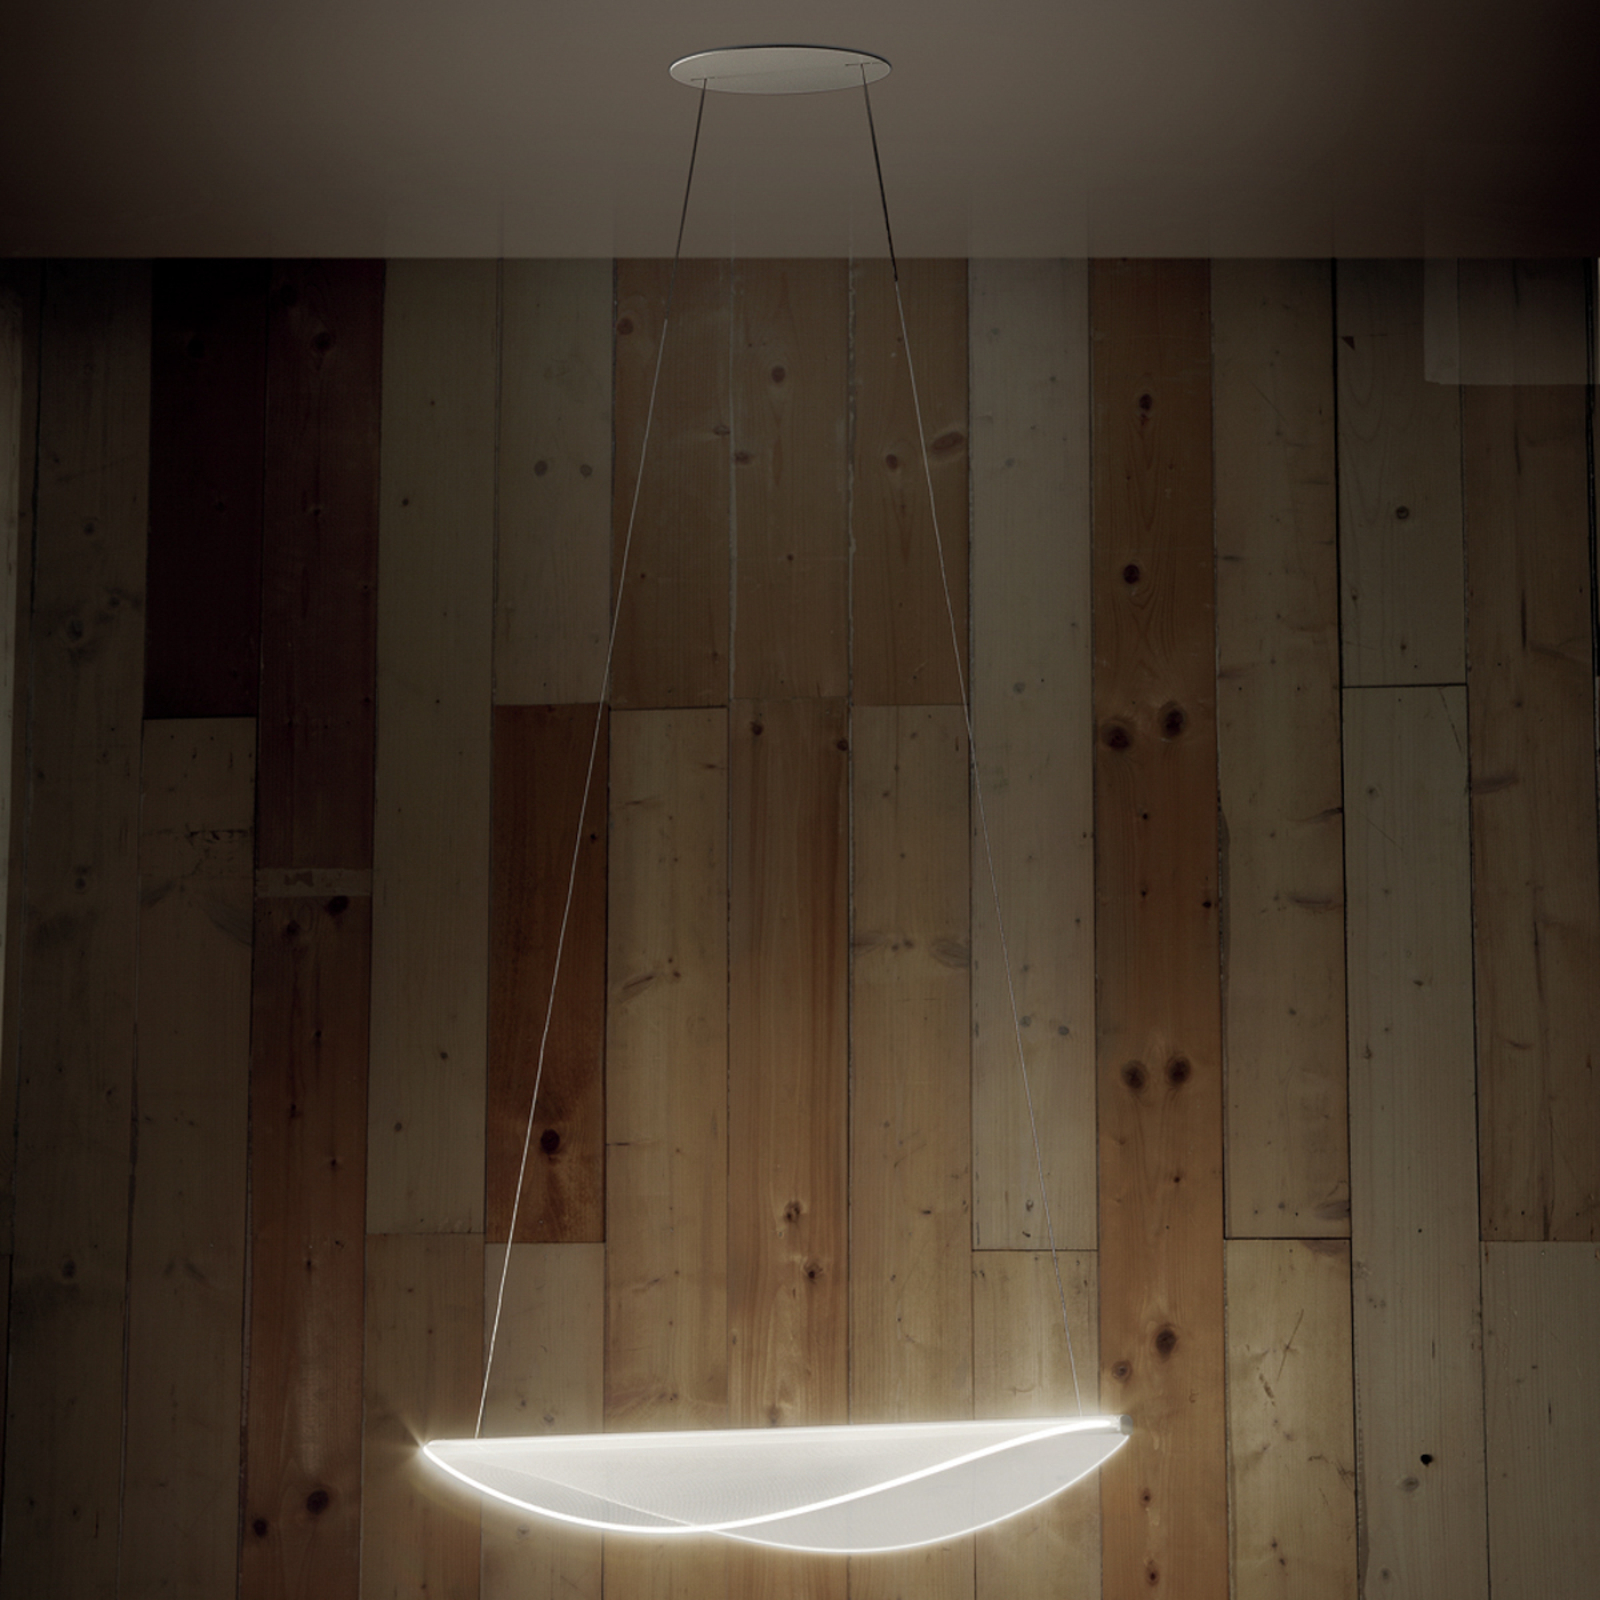 Stilnovo Diphy LED závěsné, bílá, délka 53,6 cm